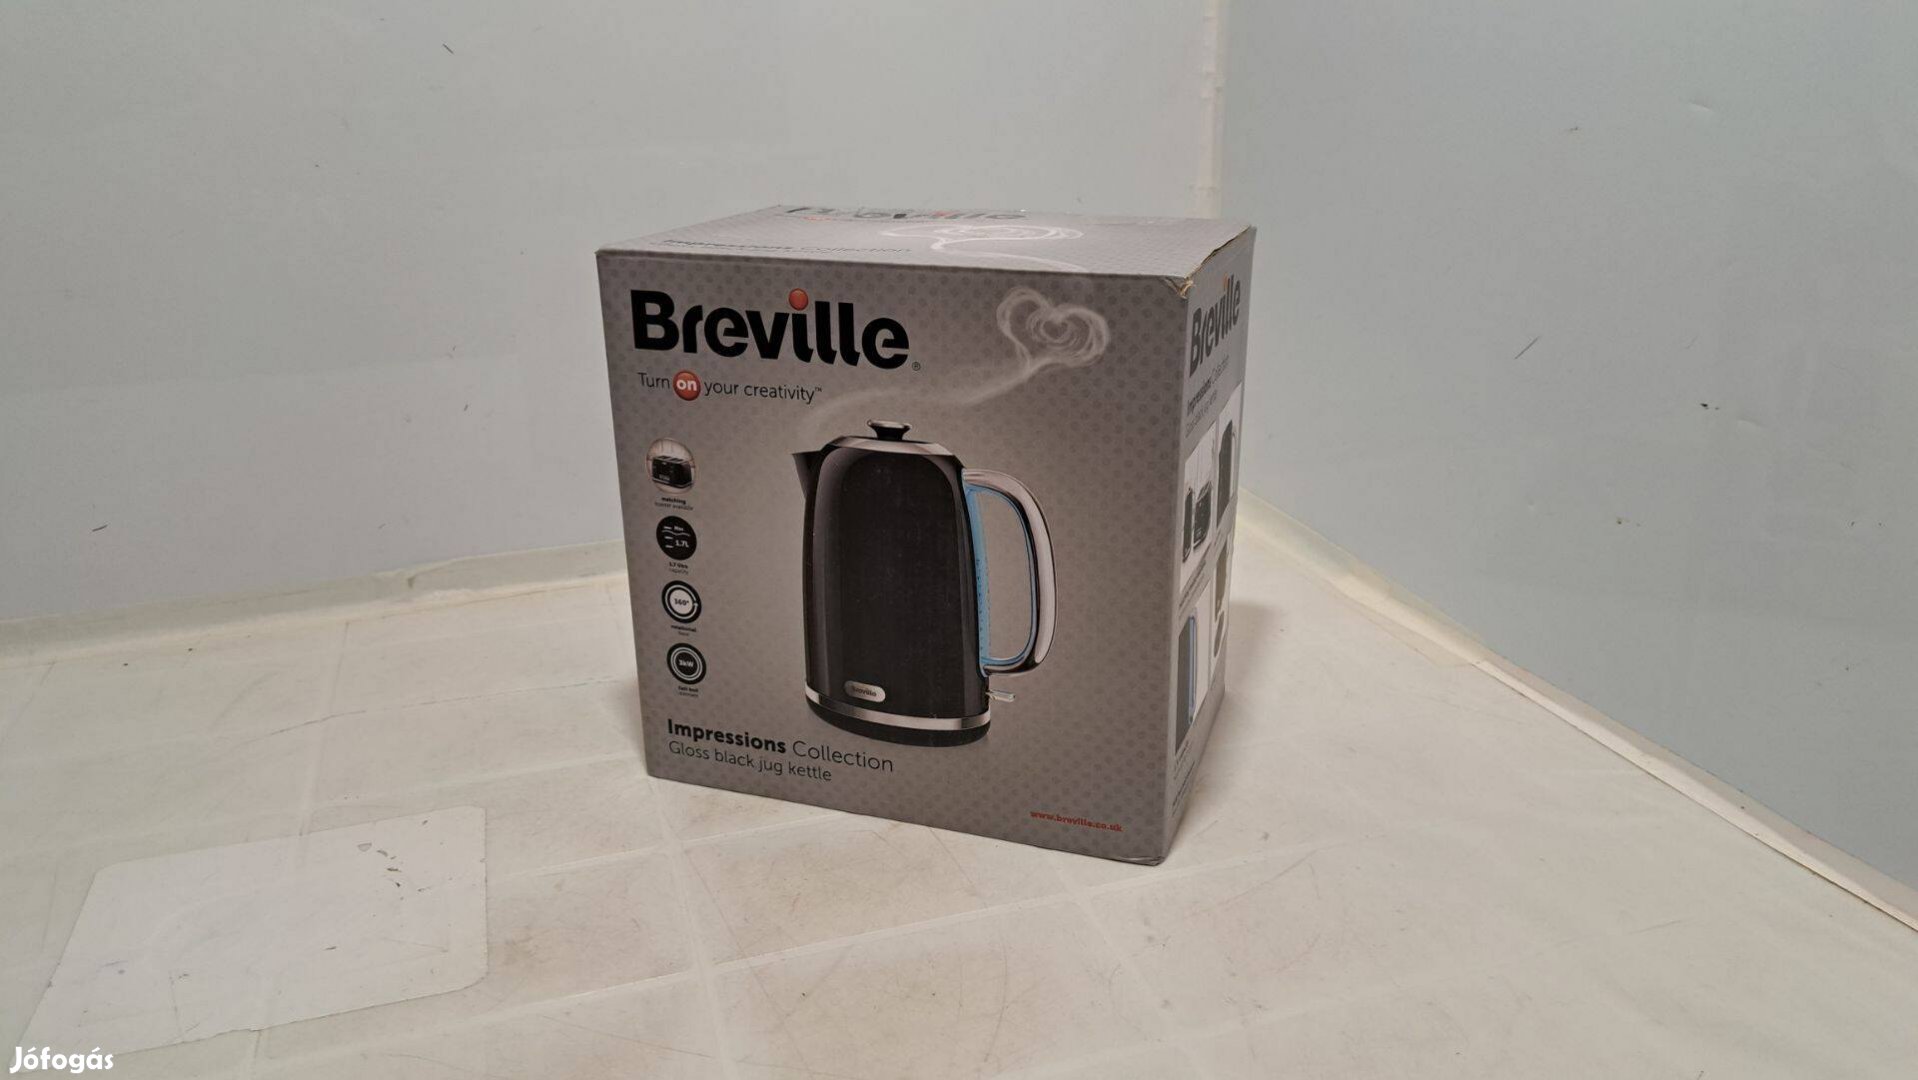 Breville Impressions Collection vízforraló (Vkj755) fekete